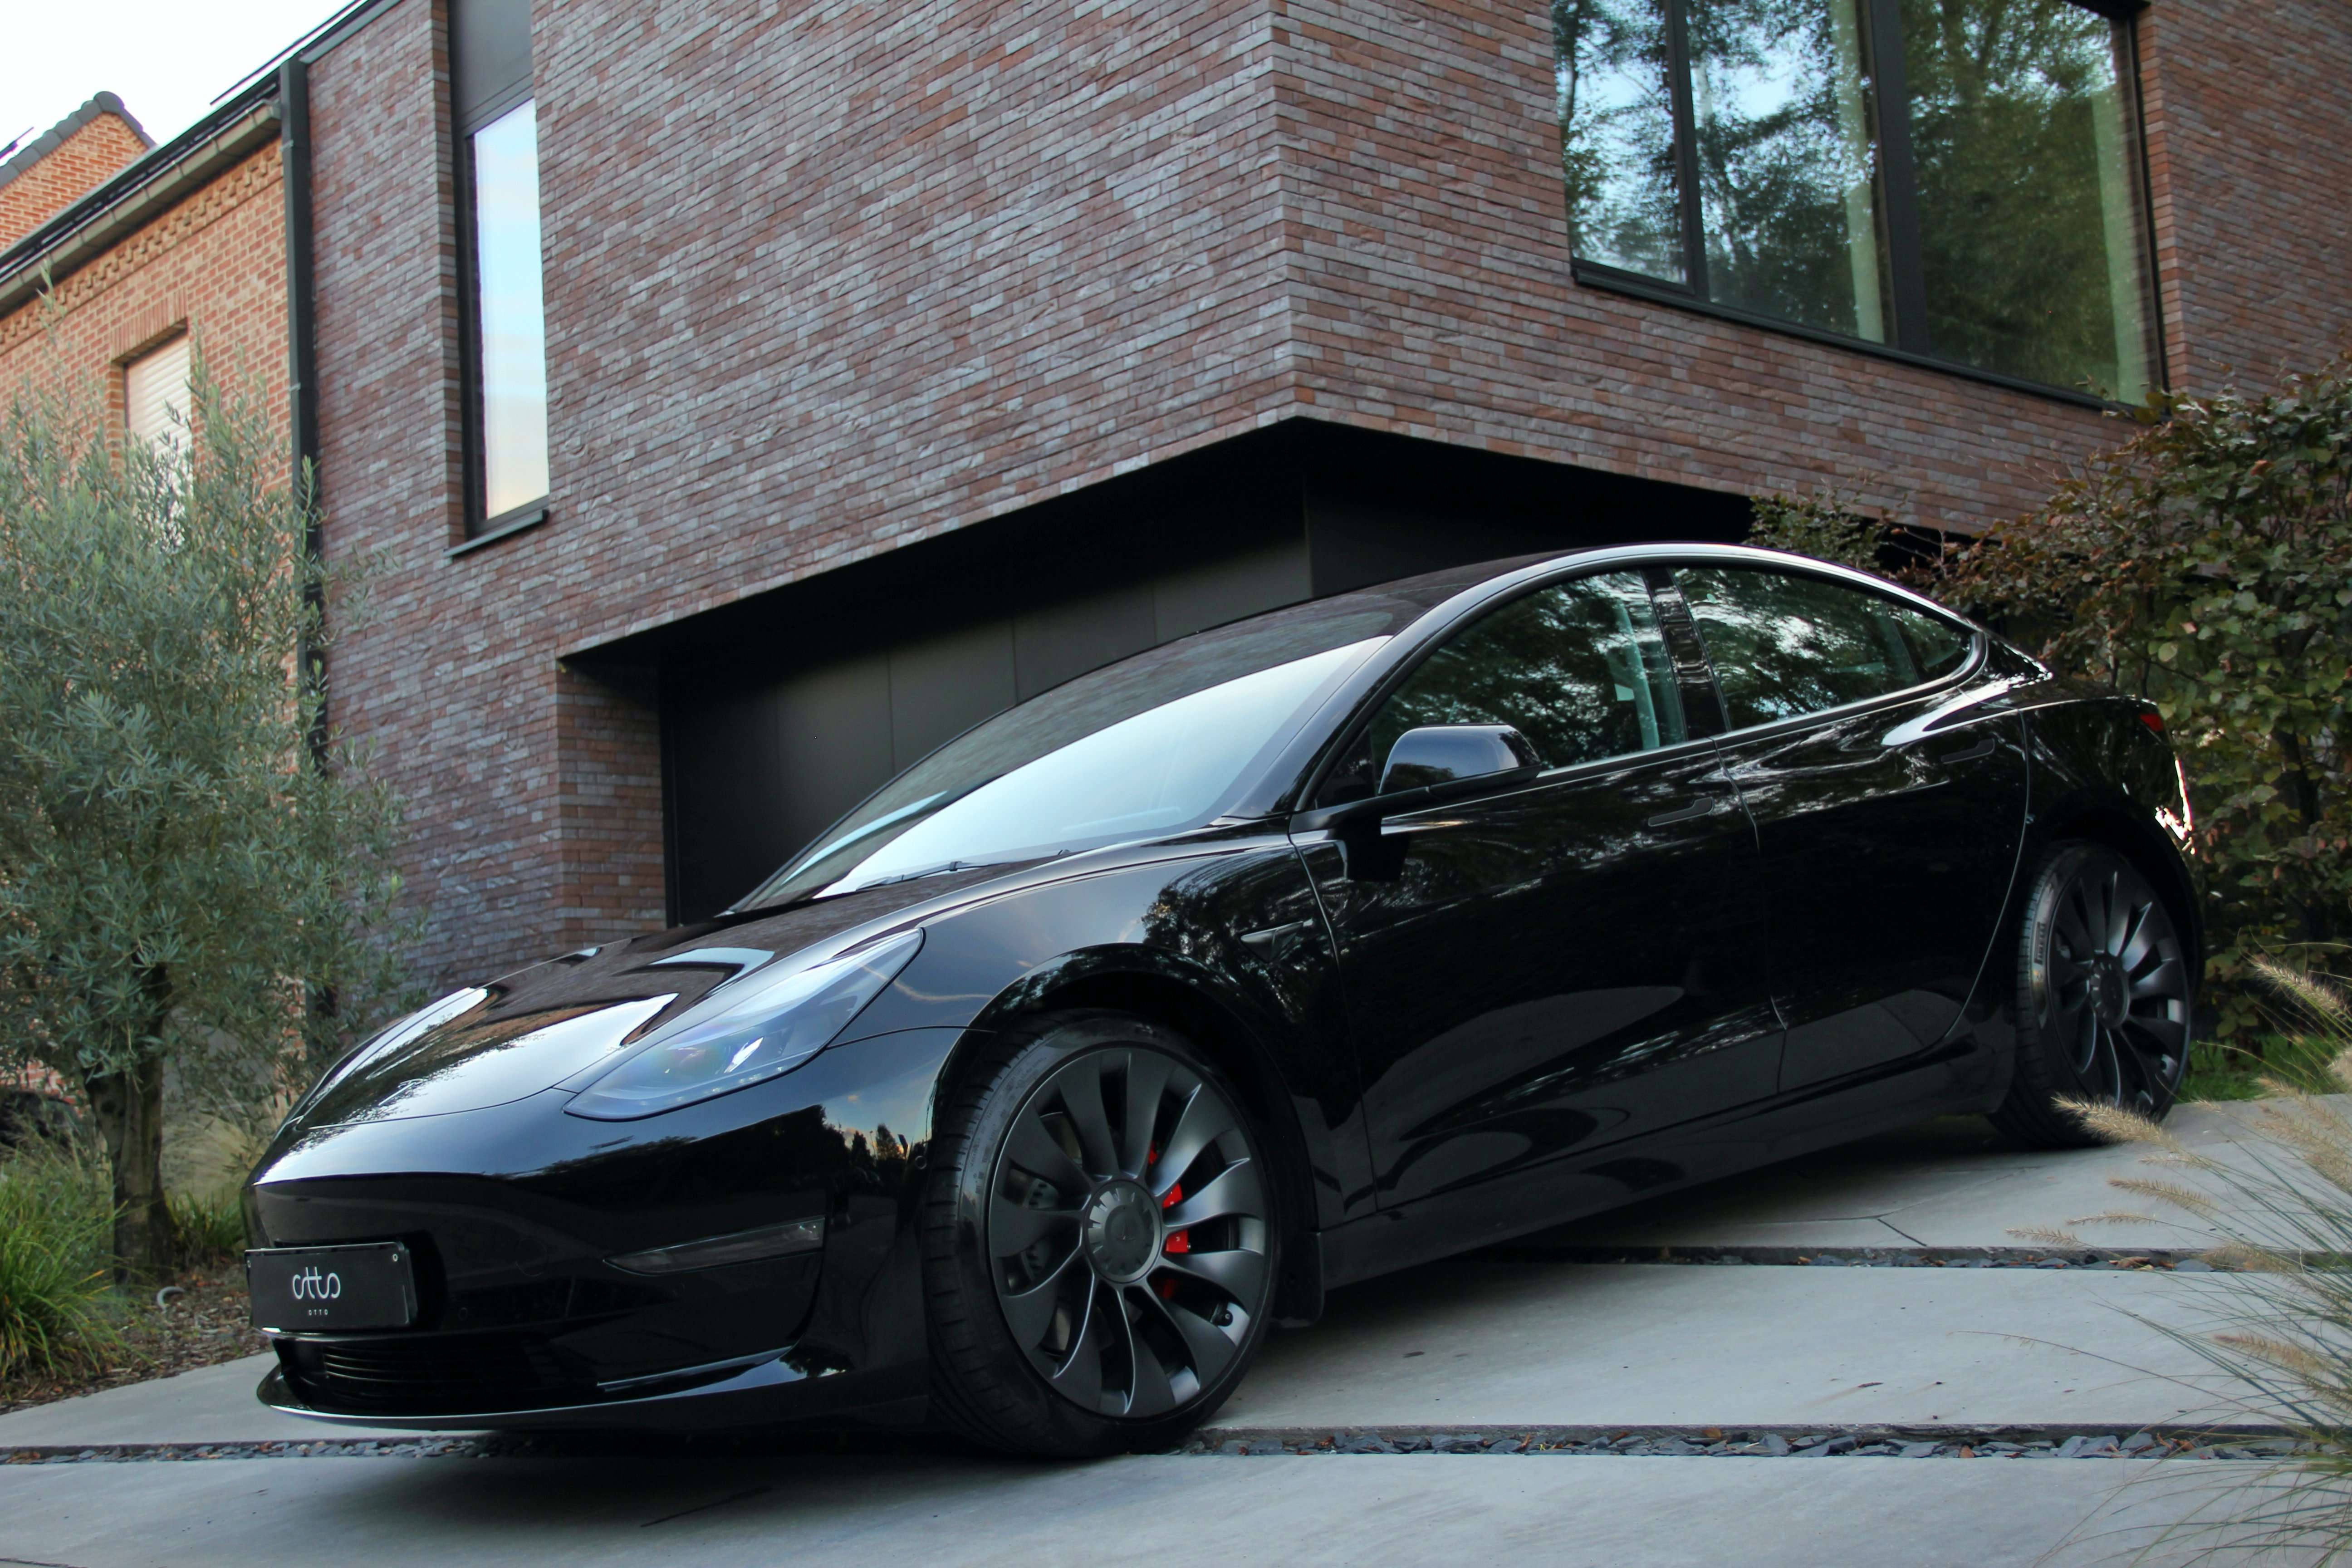 Tesla Model 3 Sedan in Black used in Beveren-Waas for € 67,900.-